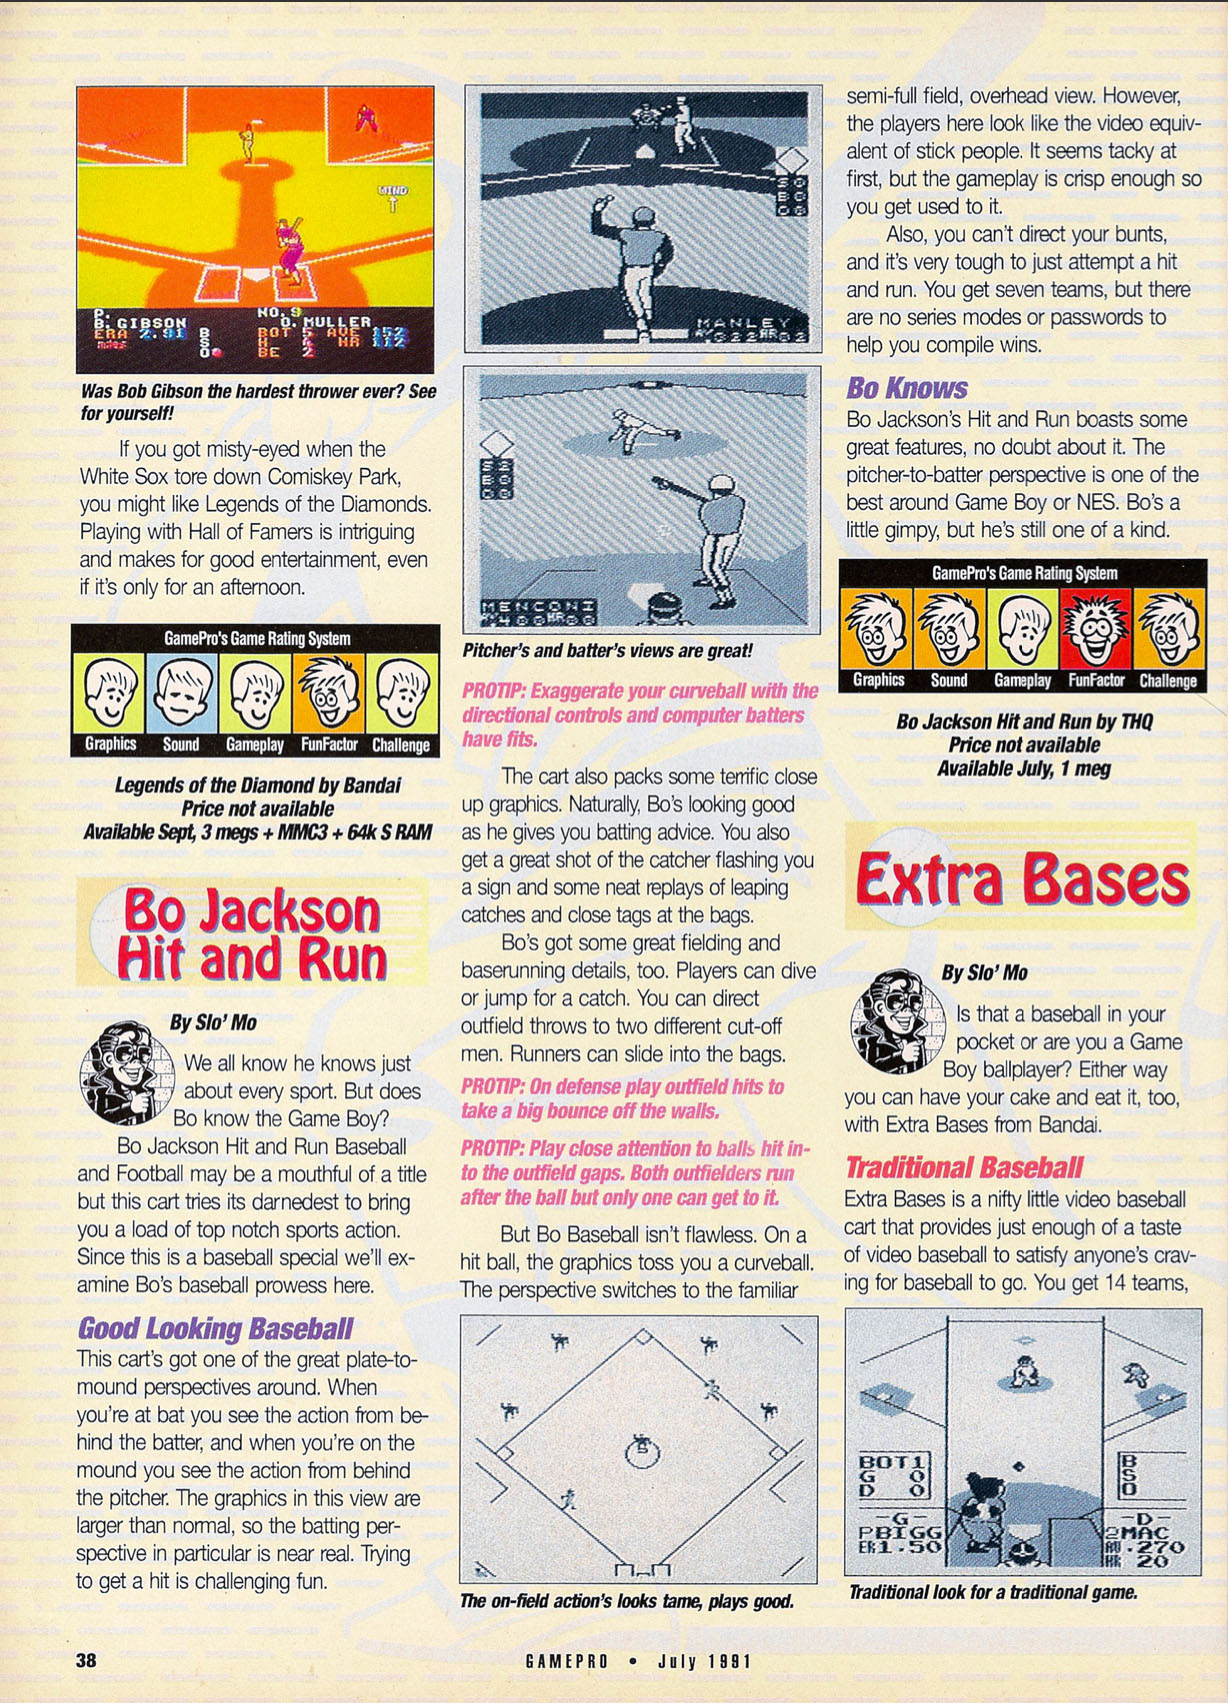 Baseball Blowout, GamePro July 1991 page 38